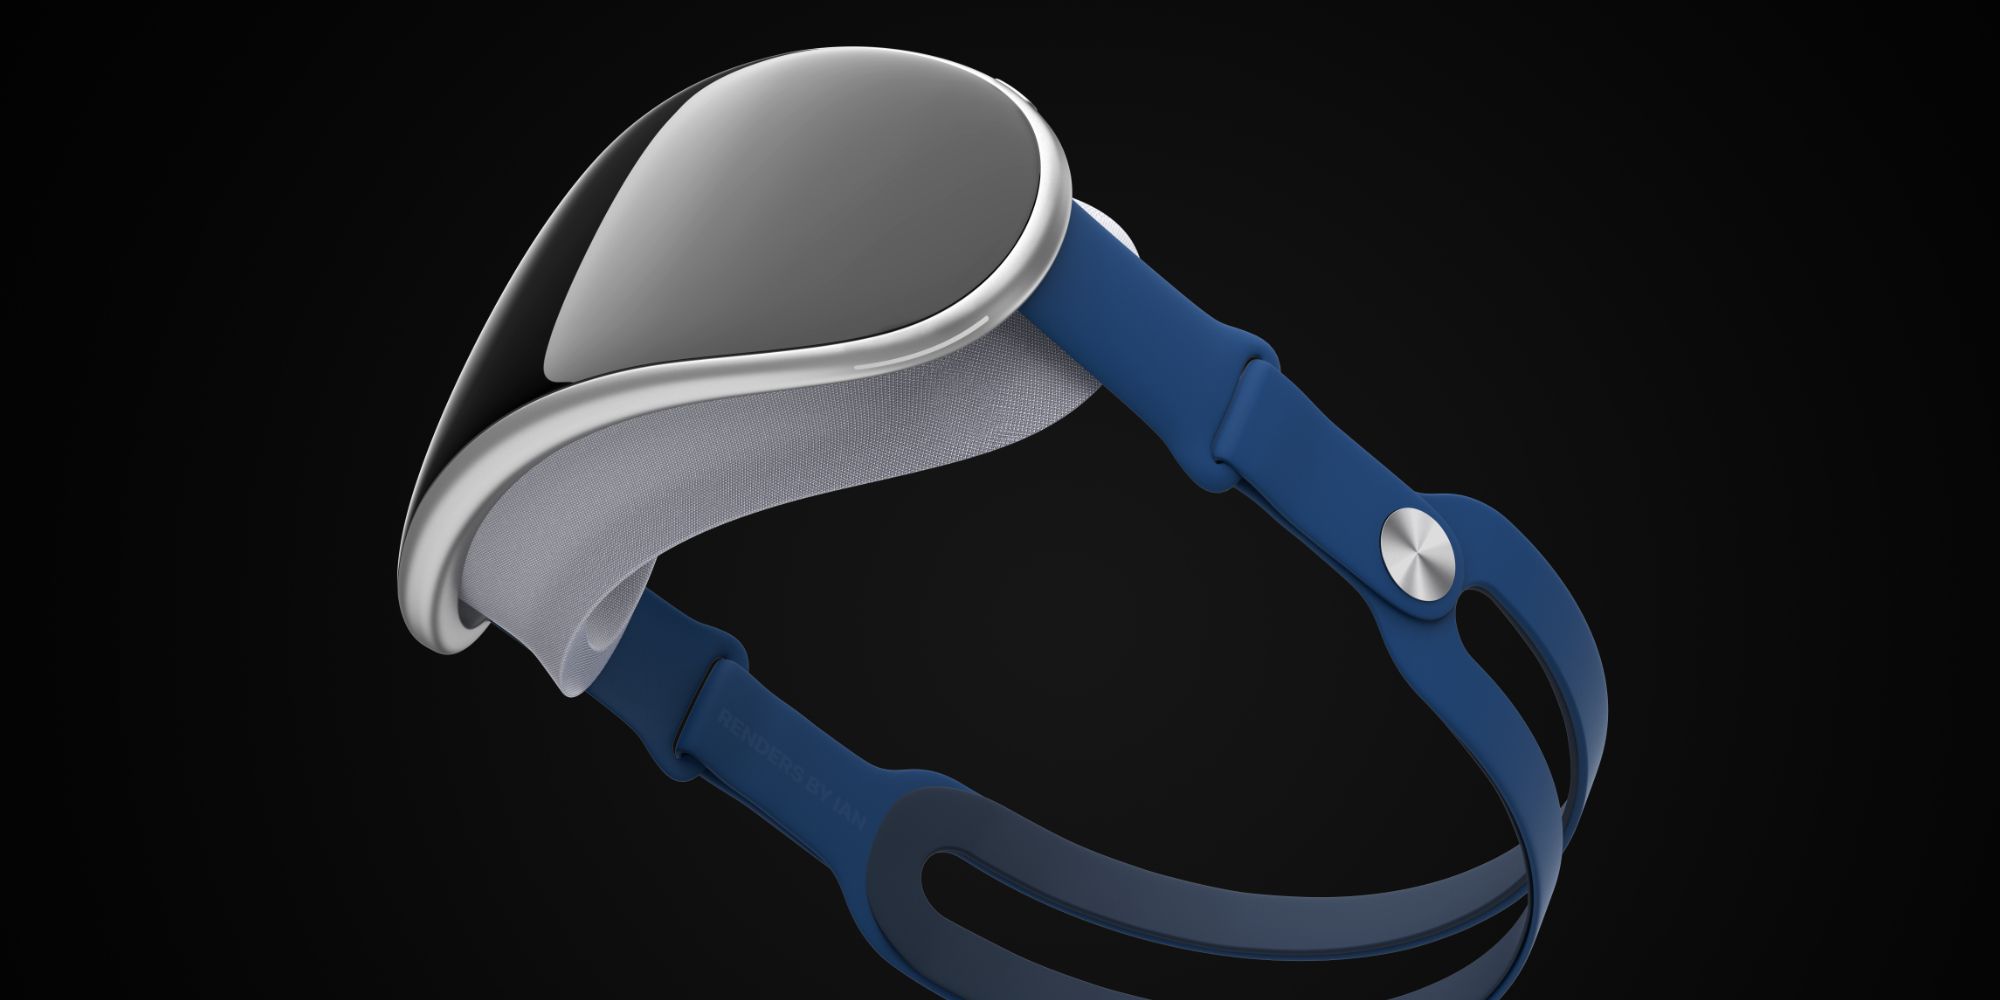 Uma renderização do fone de ouvido AR/VR da Apple contra um fundo preto